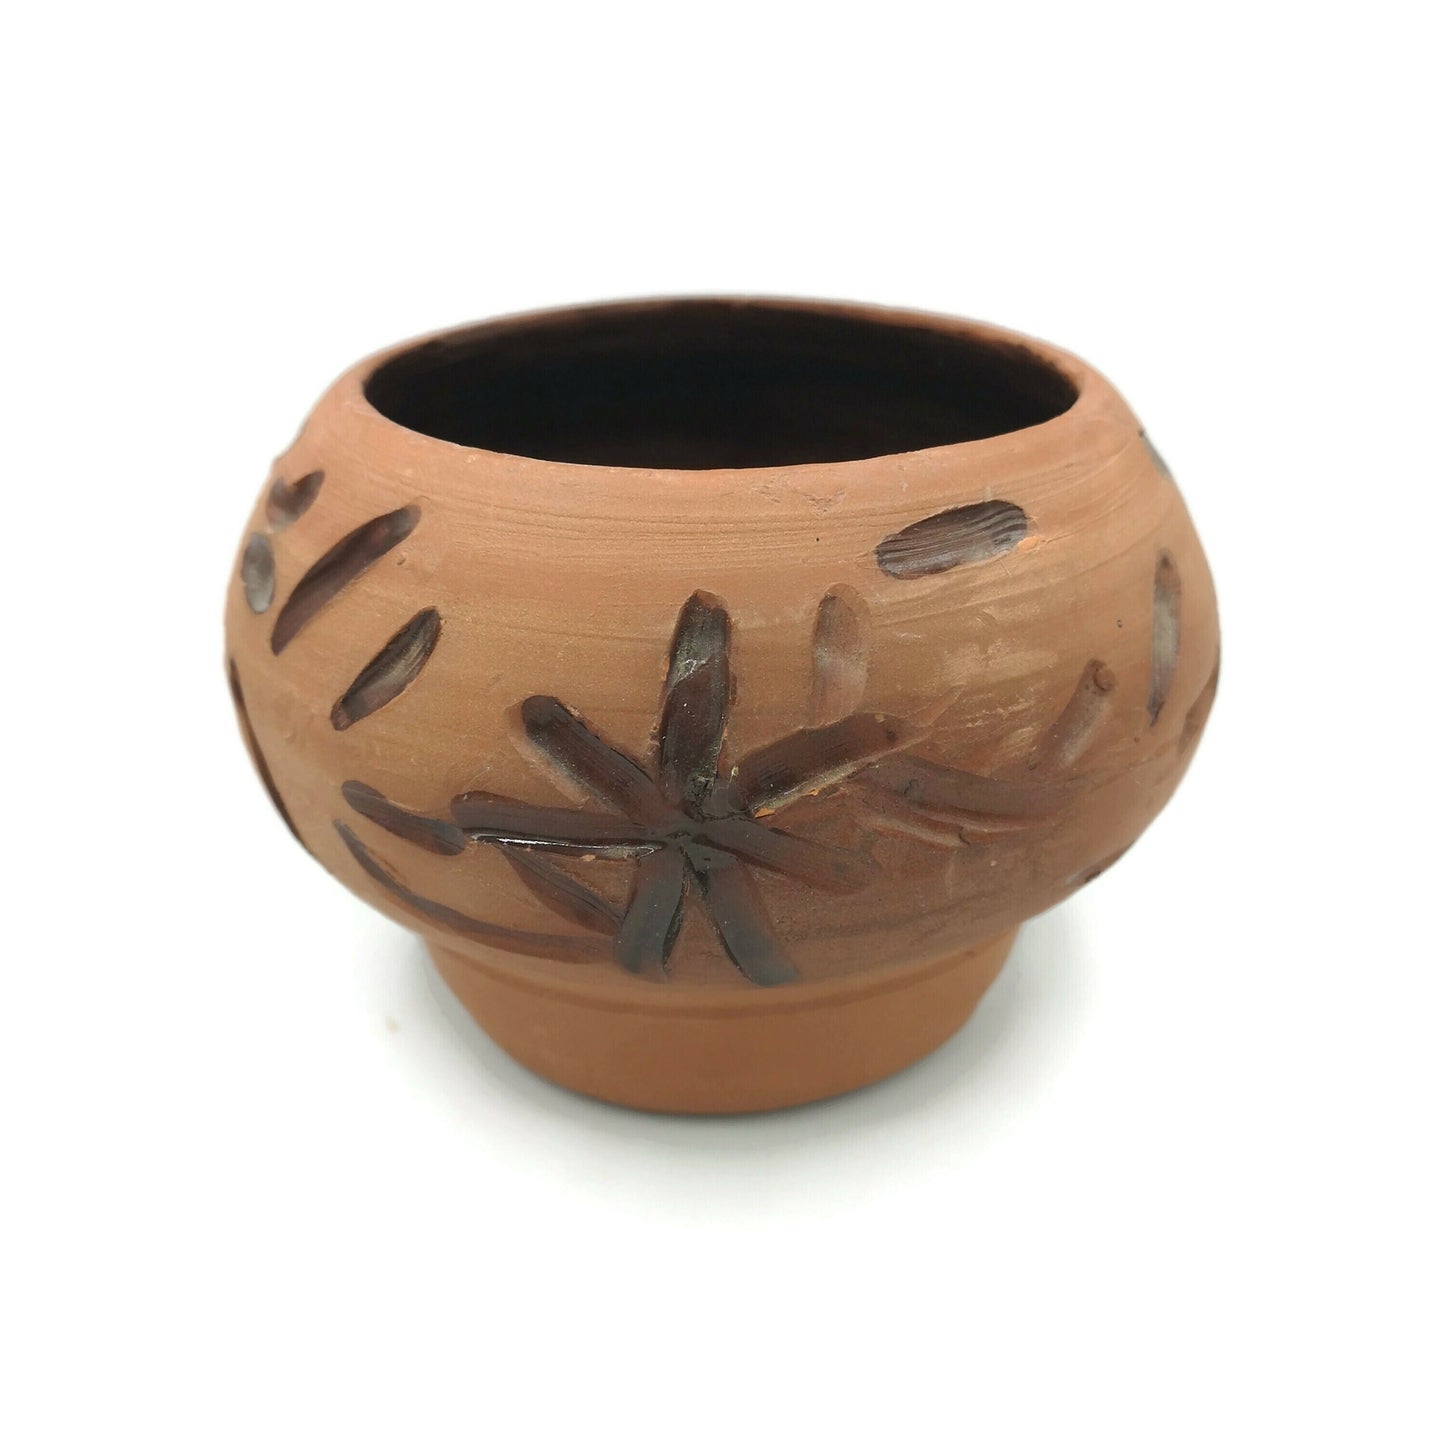 CERAMIC SUCCULENT PLANTER, Terracotta Cache Pot For Cactus, Ceramic Bud Vase Decorative, New Home Gift - Ceramica Ana Rafael